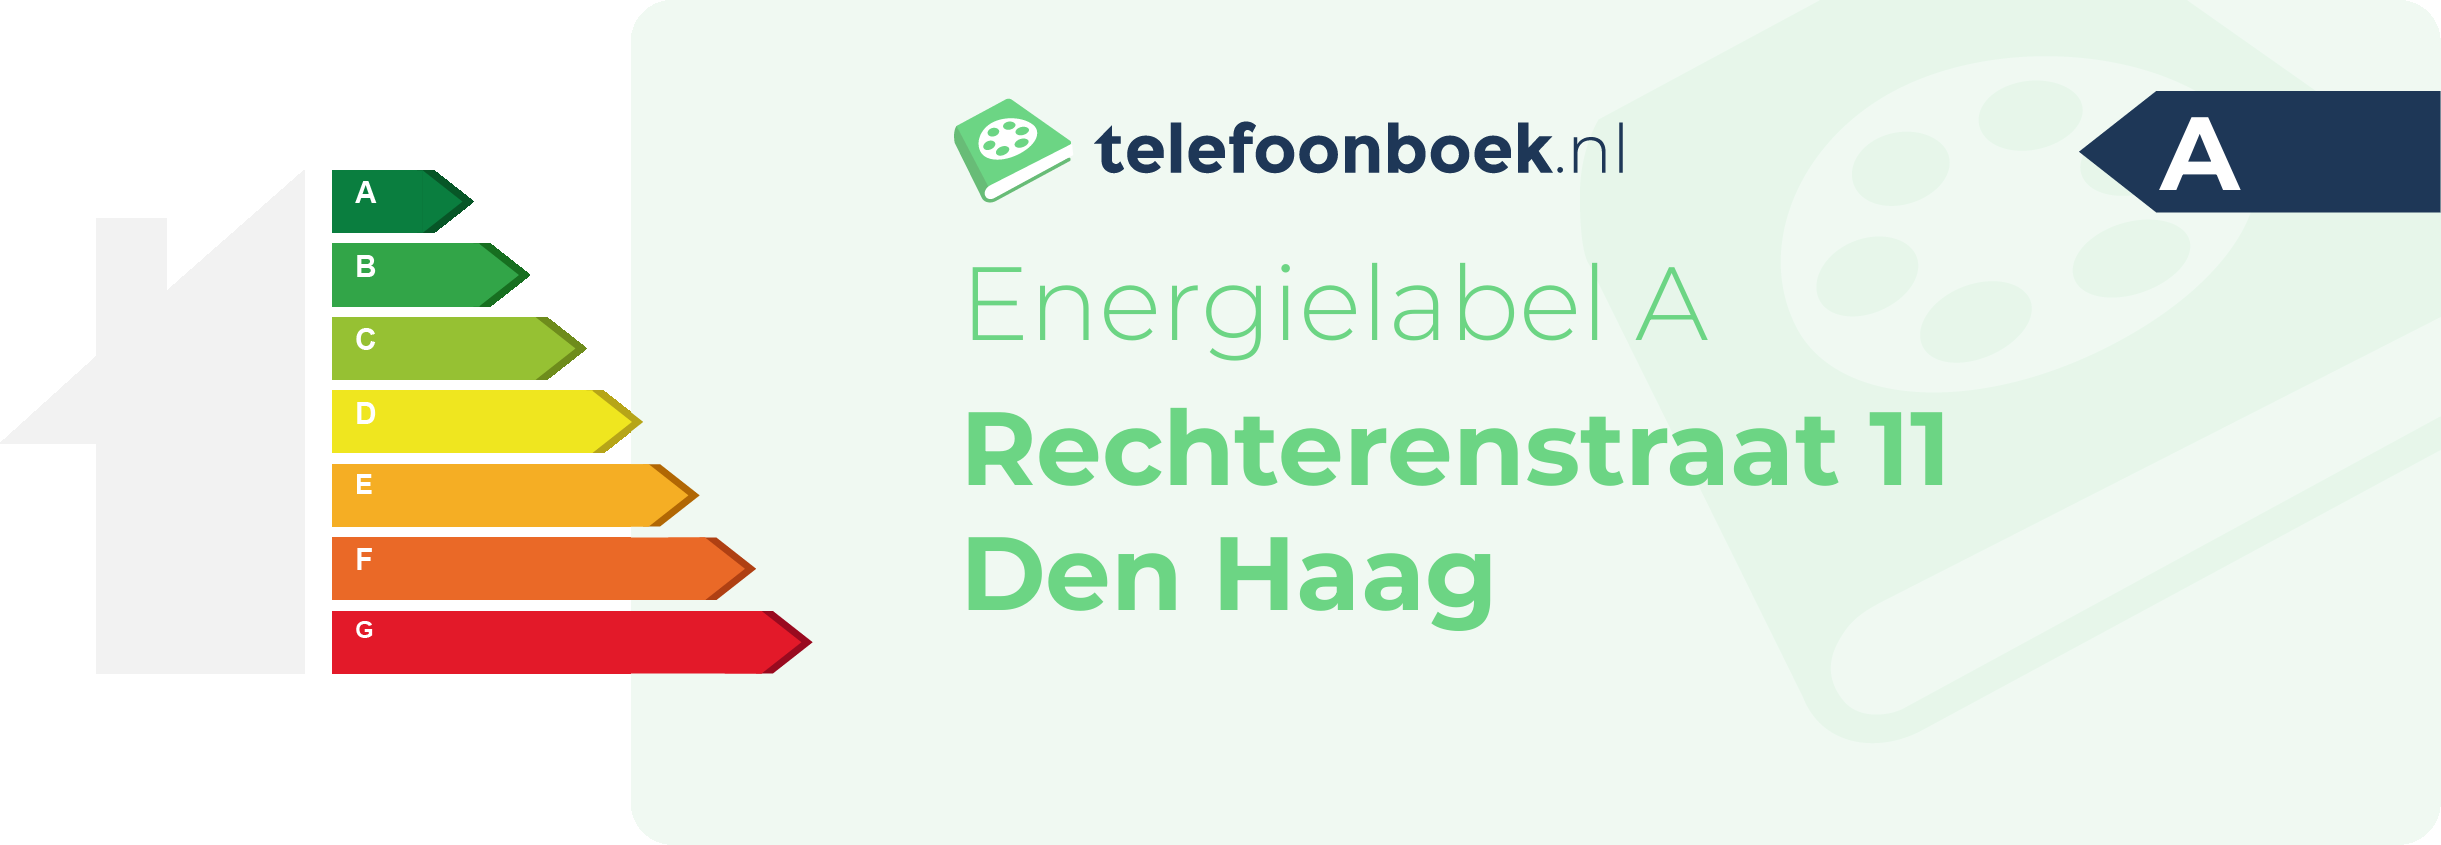 Energielabel Rechterenstraat 11 Den Haag